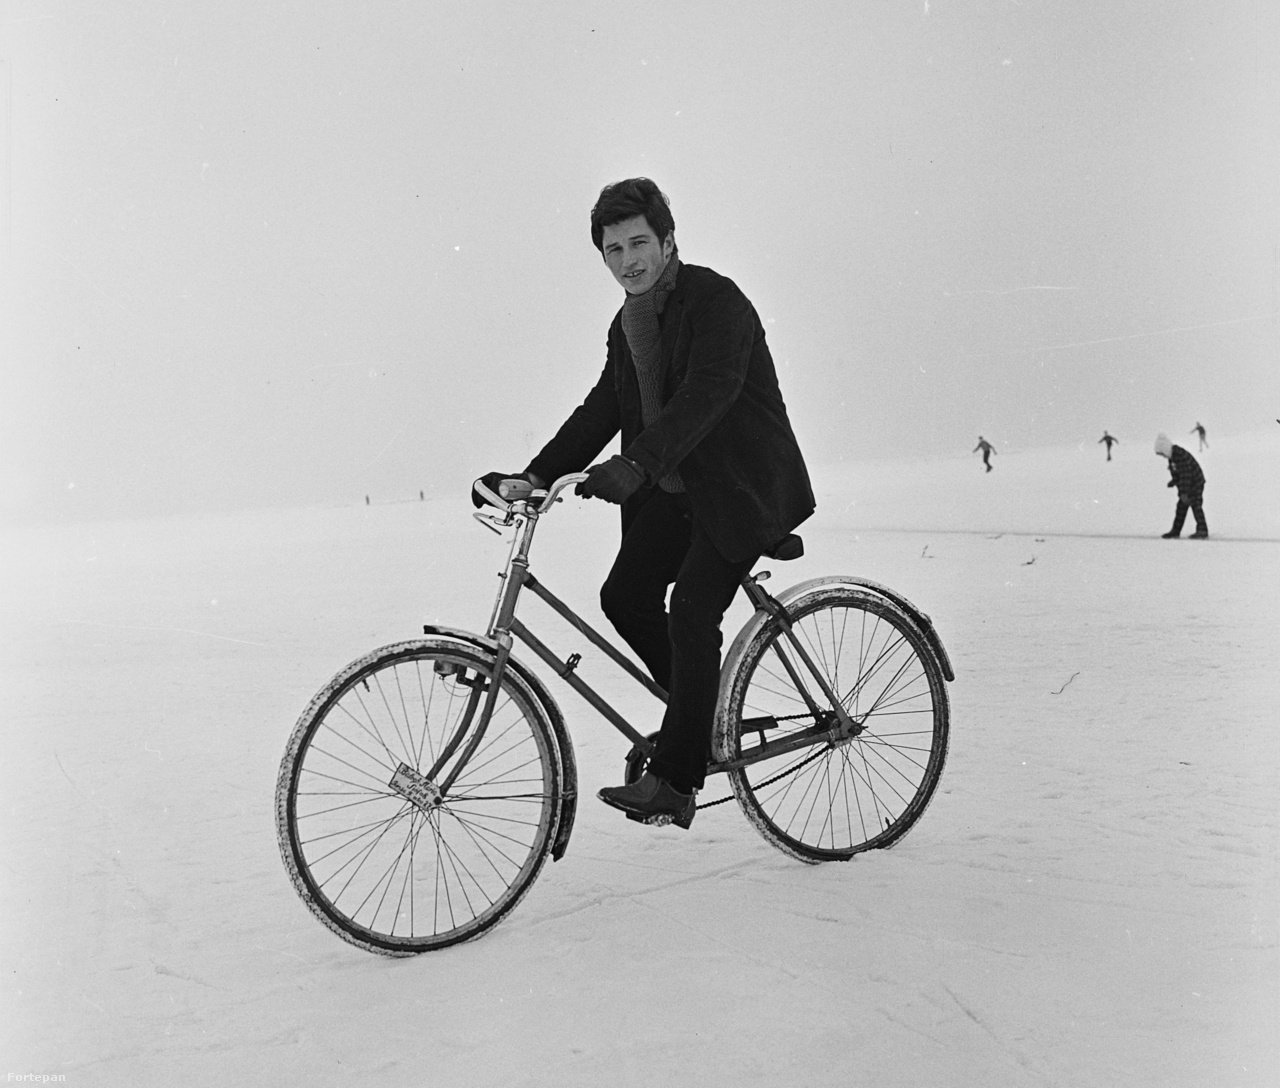 Biciklivel a befagyott Balatonon, Siófokon 1971-ben.